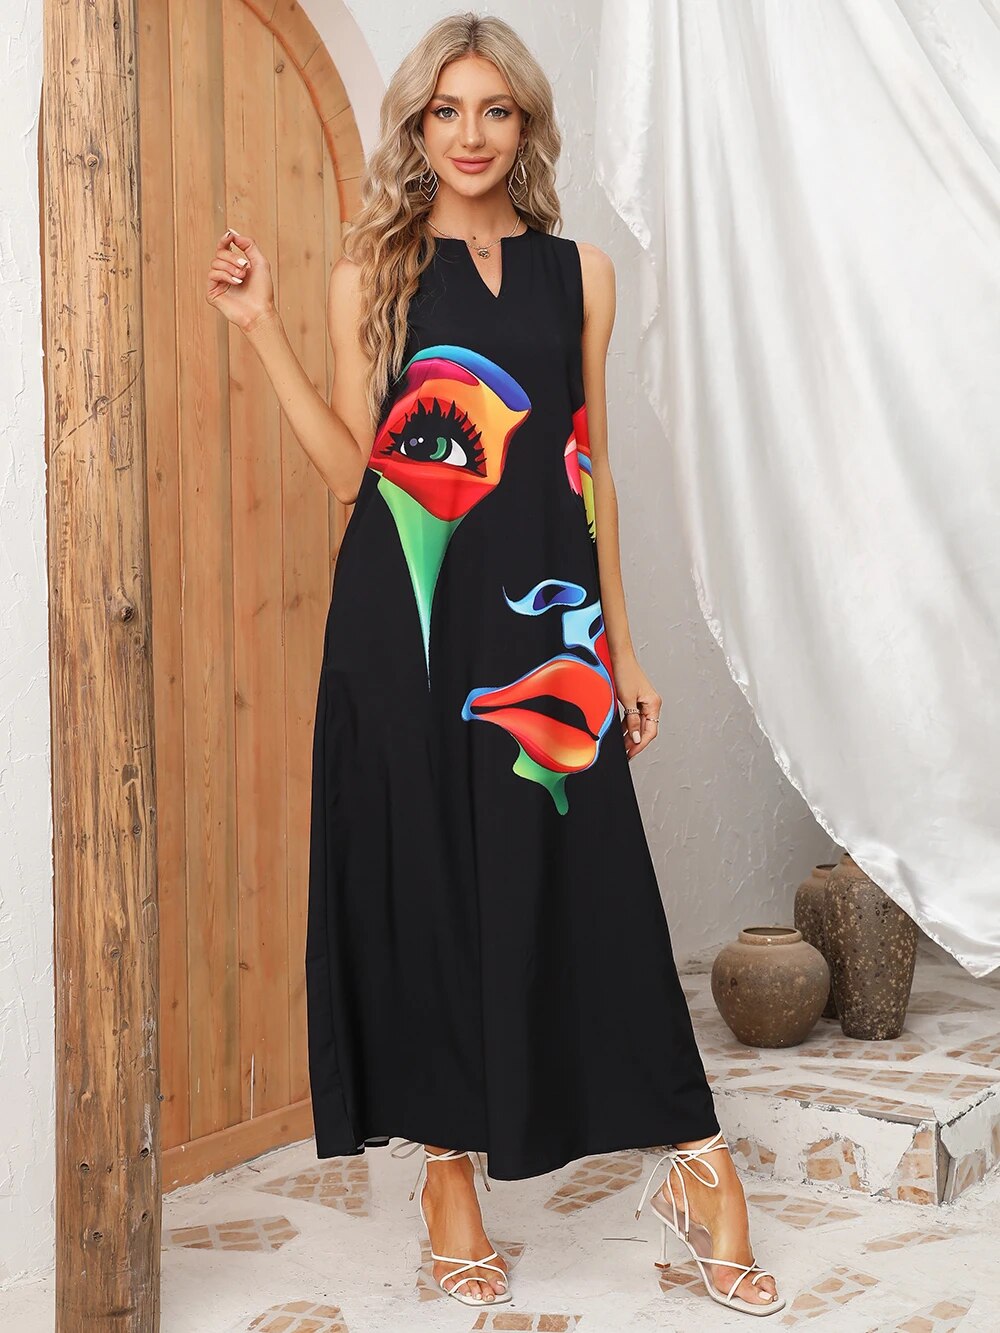 Women's Sleeveless V-Neck Loose Beach Dress - Casual Face Print Summer Dress